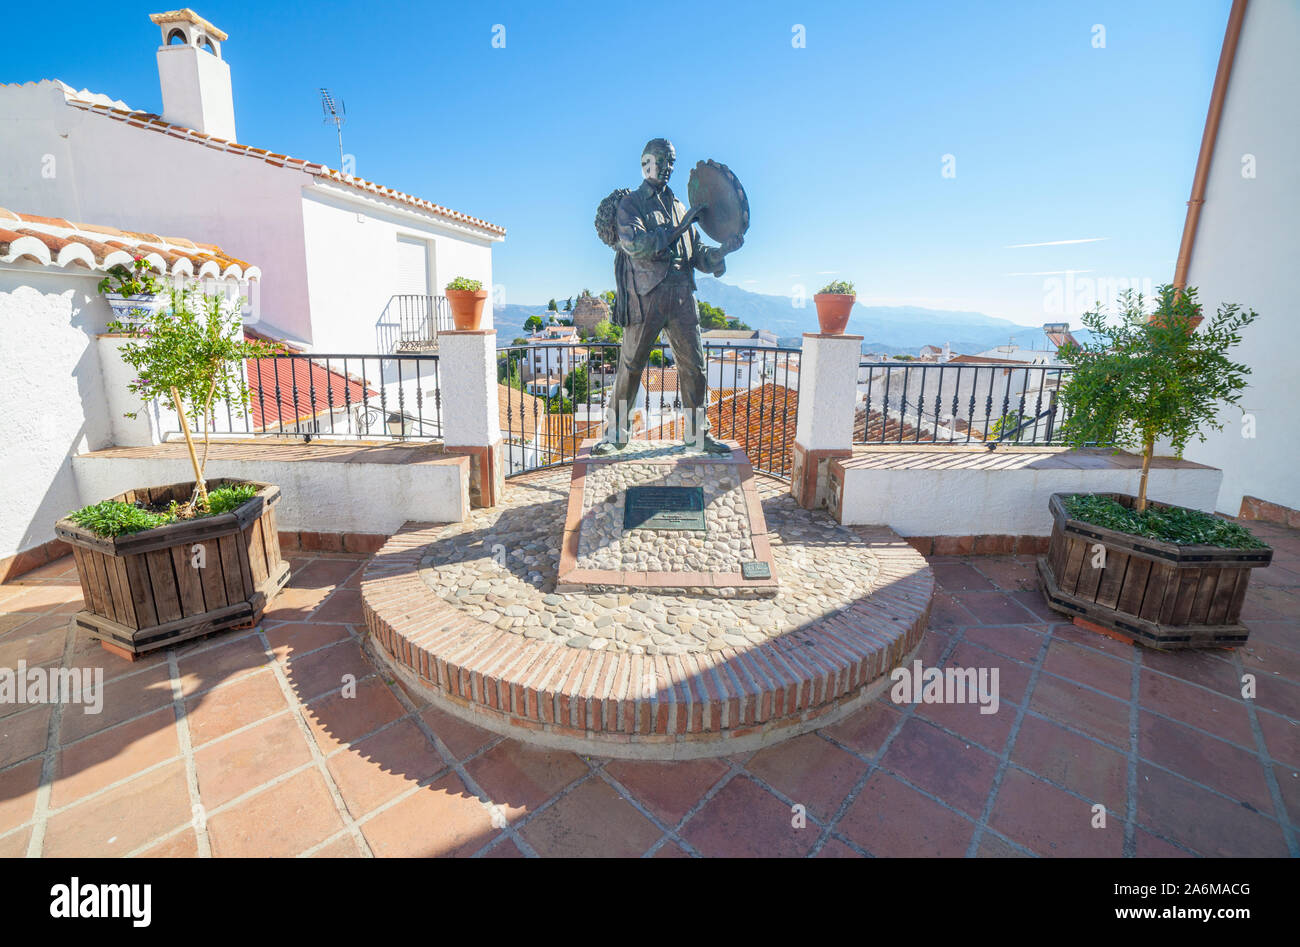 Comares, Spanien - September 23th, 2018: Statue der Musiker Antonio Gallego in Parana, Malaga, Spanien. Berühmte Schauspieler von verdiales Volksmusik Stockfoto